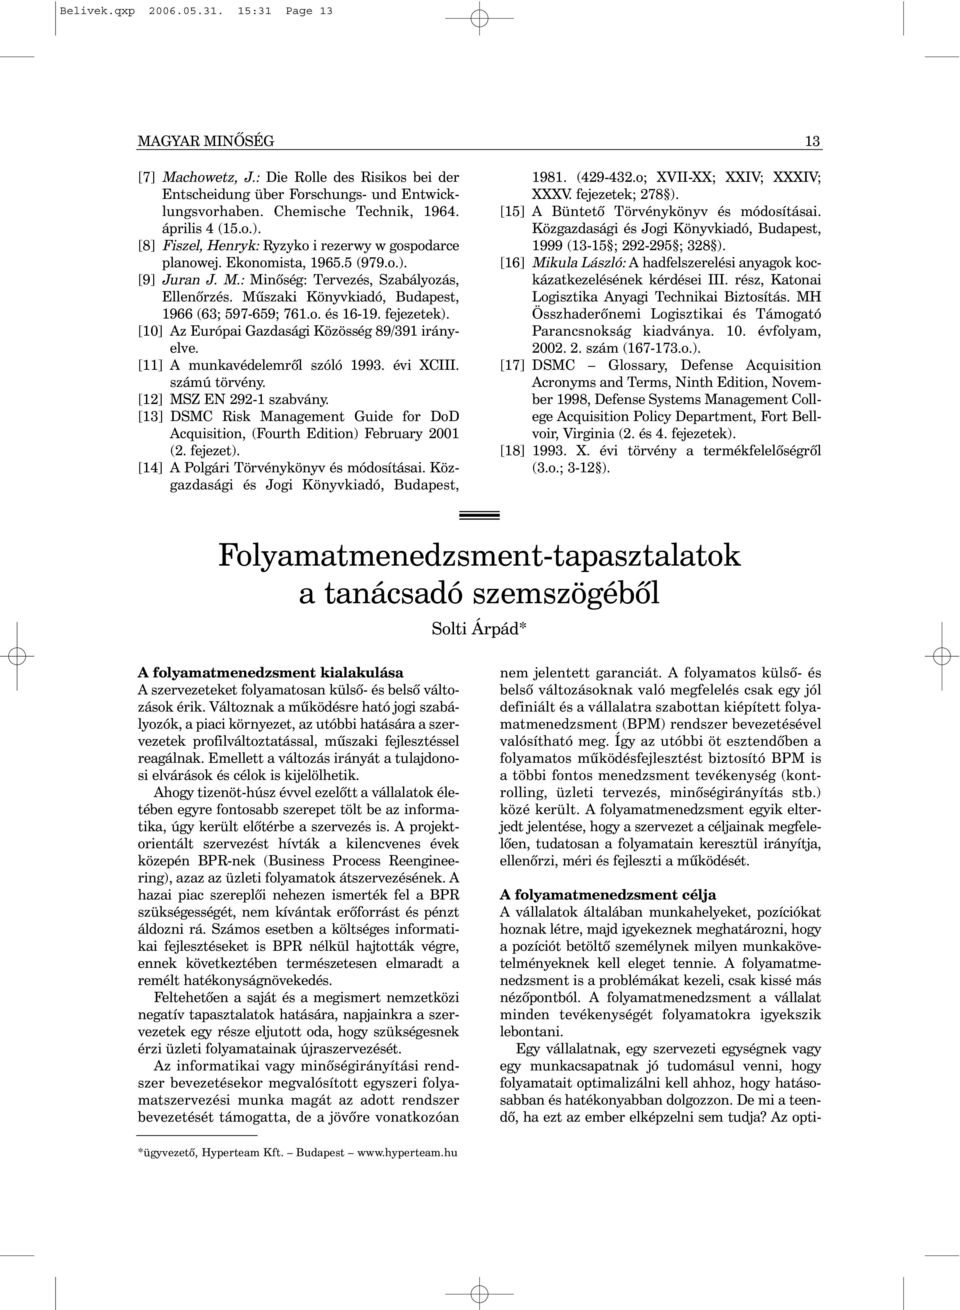 Mûszaki Könyvkiadó, Budapest, 1966 (63; 597-659; 761.o. és 16-19. fejezetek). [10] Az Európai Gazdasági Közösség 89/391 irányelve. [11] A munkavédelemrõl szóló 1993. évi XCIII. számú törvény.